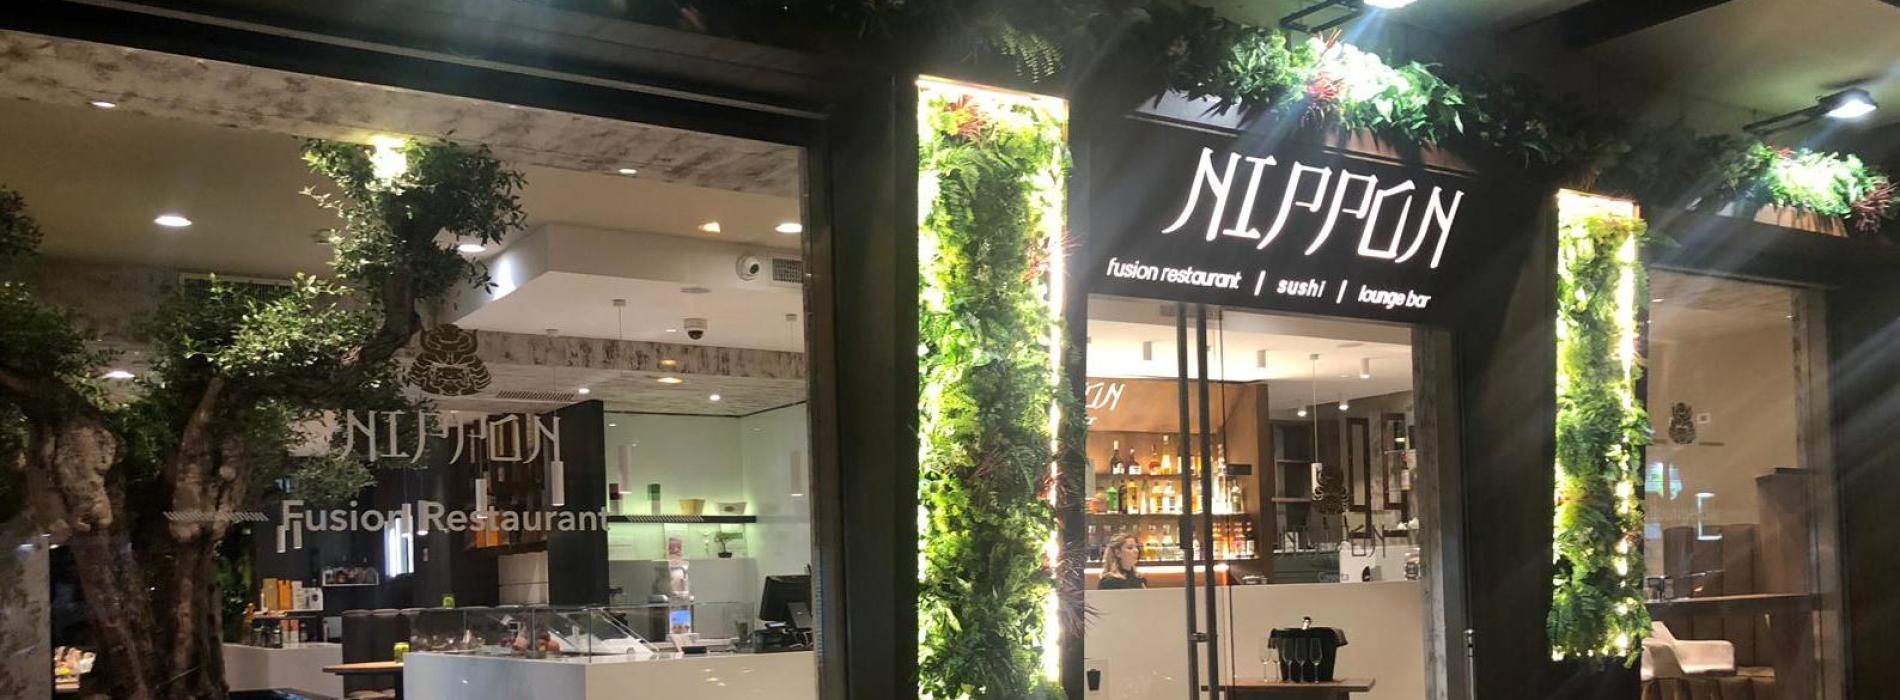 Nippon, a Caserta un hub gastronomico nel segno della fusion